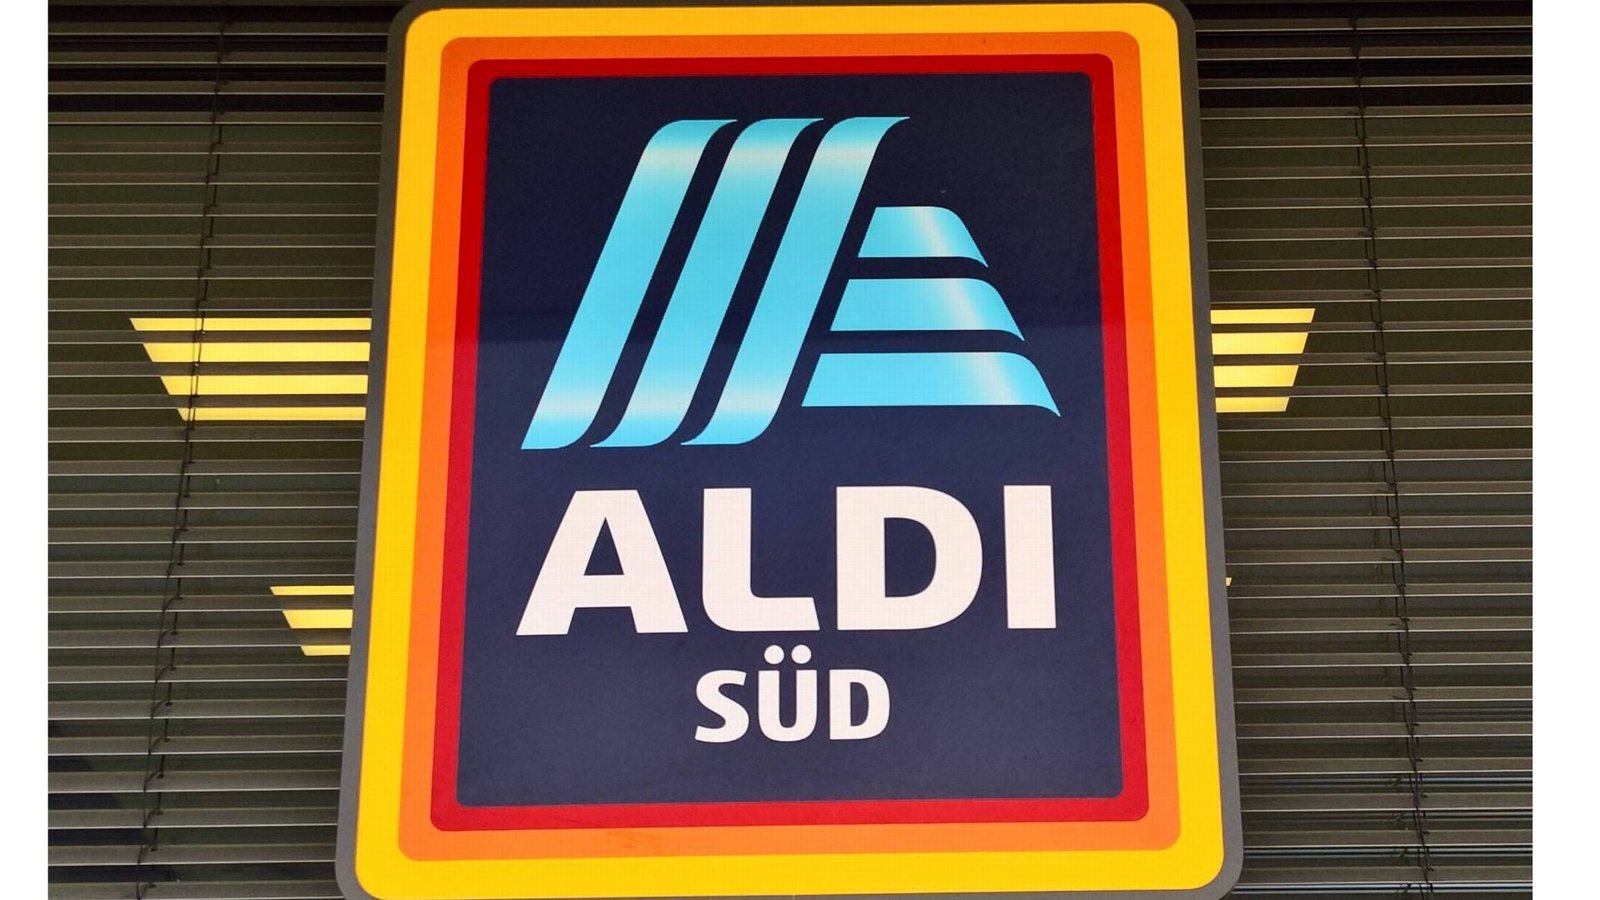 Als Aldi bekannt sind die zwei aus einem gemeinsamen Unternehmen hervorgegangenen, rechtlich selbstständigen Unternehmensgruppen und Discount-Einzelhandelsketten Aldi Nord und Aldi SüdFoto: Imago/Manferd Segerer